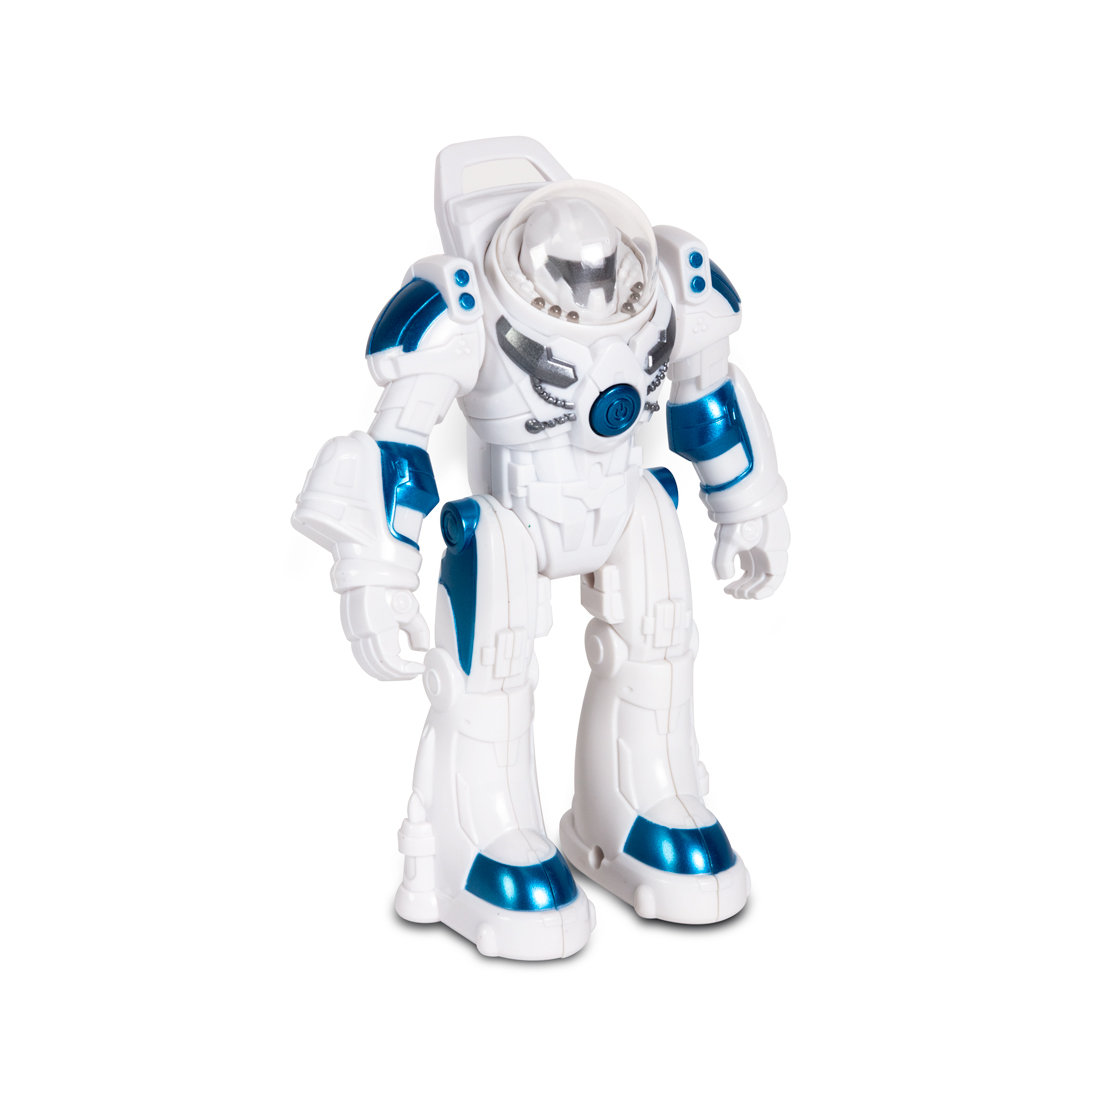 купить Робот RS MINI Robot Spaceman, RASTAR, 77100W, 1:32, Свет, Музыка, Движущиеся съемные руки и ноги, Скрытые колеса, Белый в Алматы